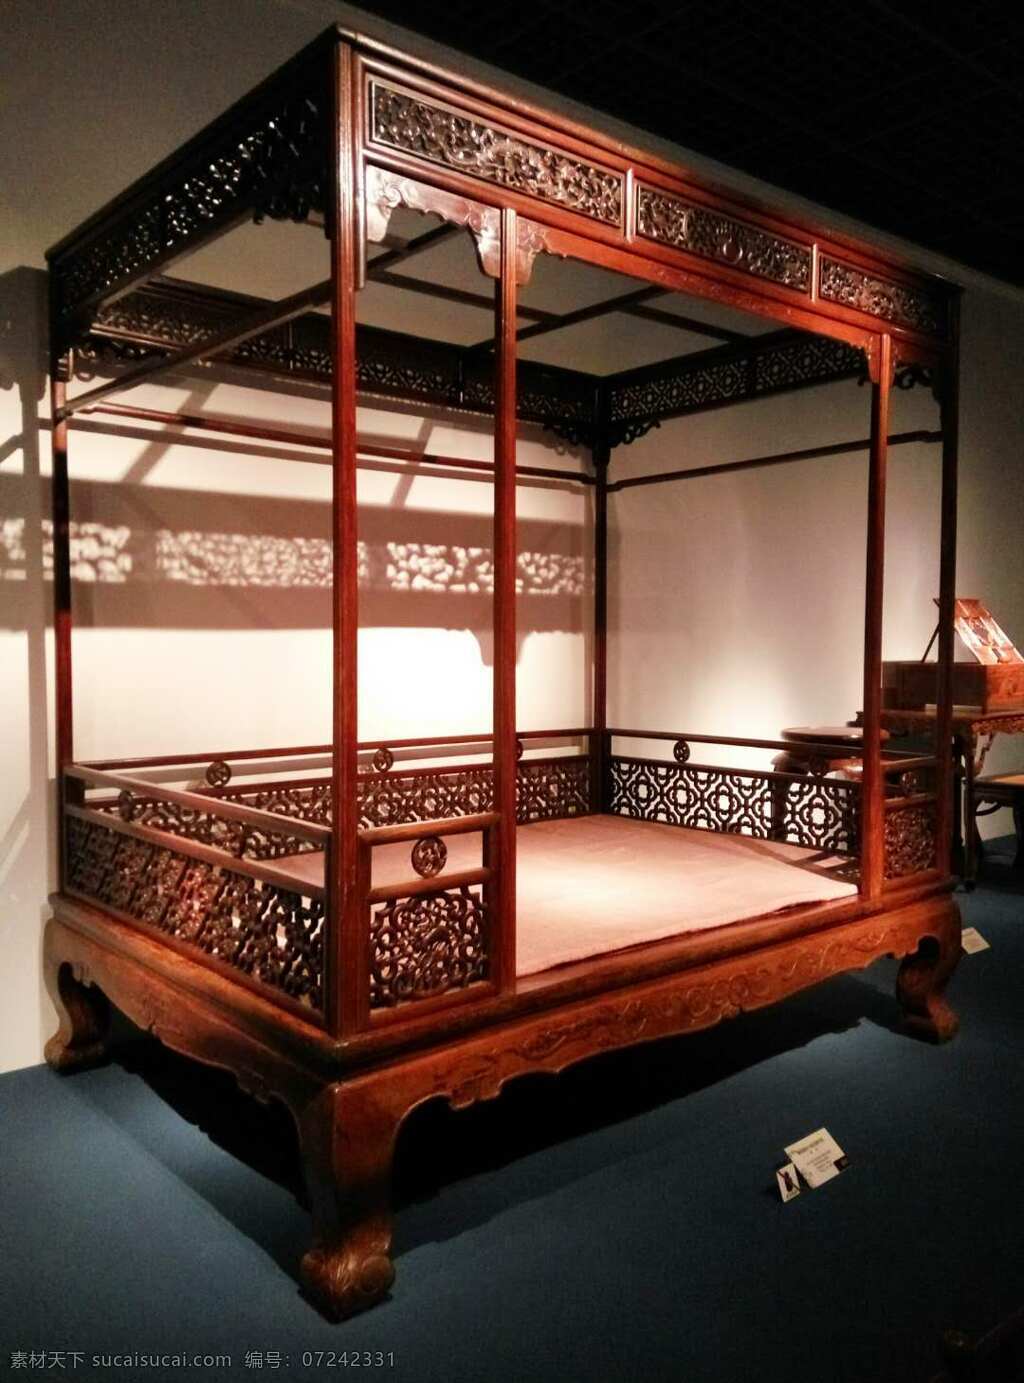 古代木床 古老 木床 雕塑 床 精致 古朴 文化艺术 传统文化